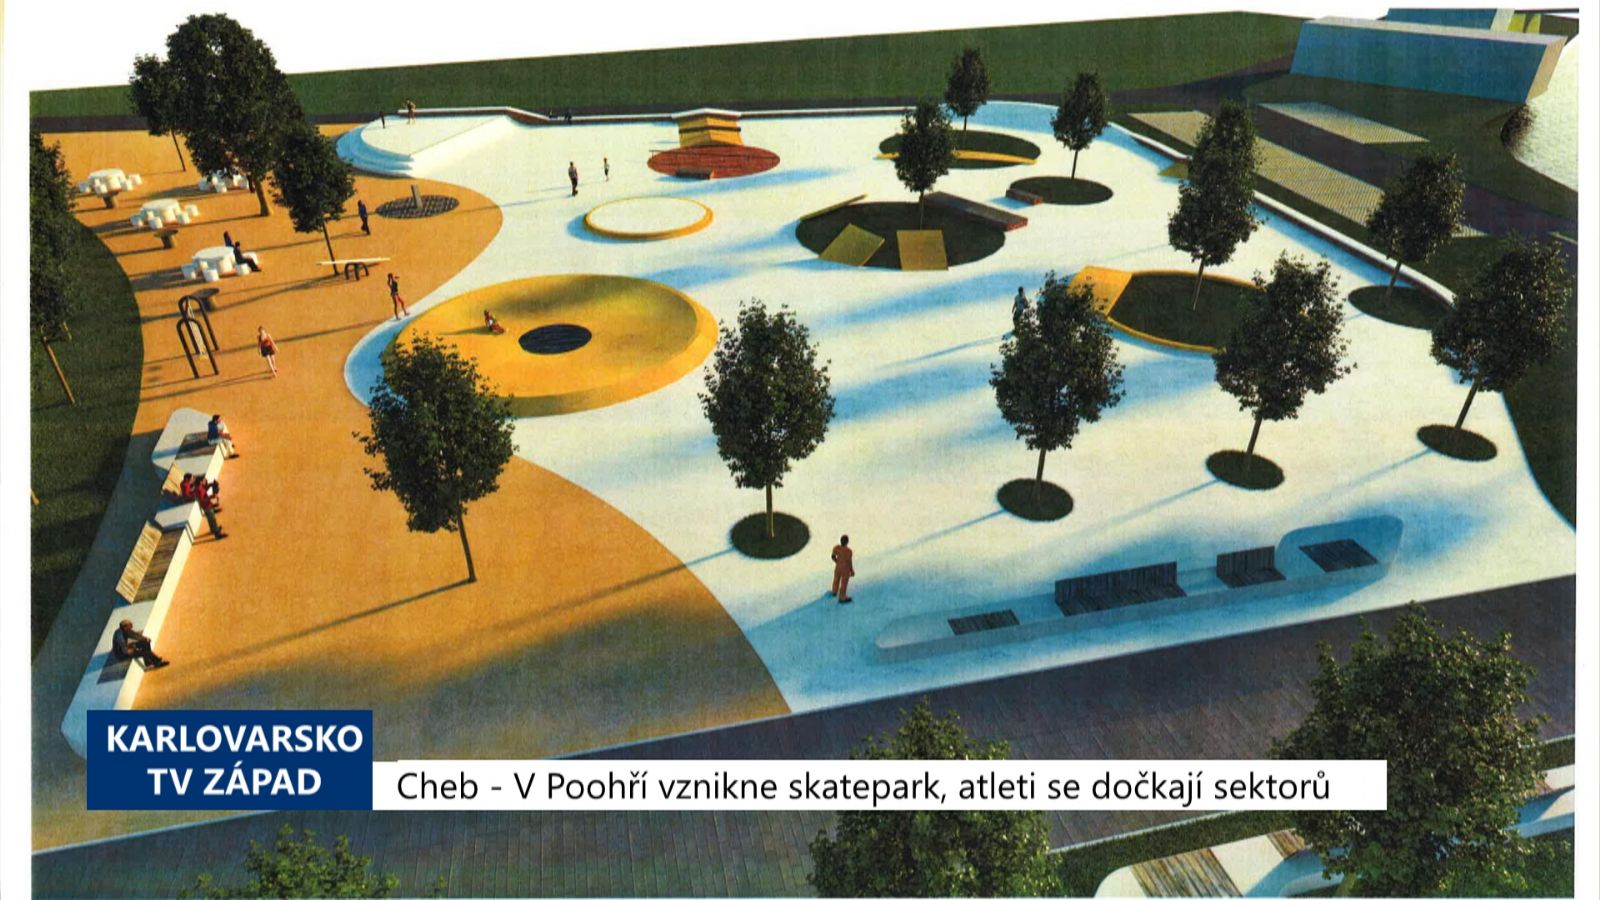 Cheb: V Poohří vznikne skatepark, atleti se dočkají sektorů (TV Západ)